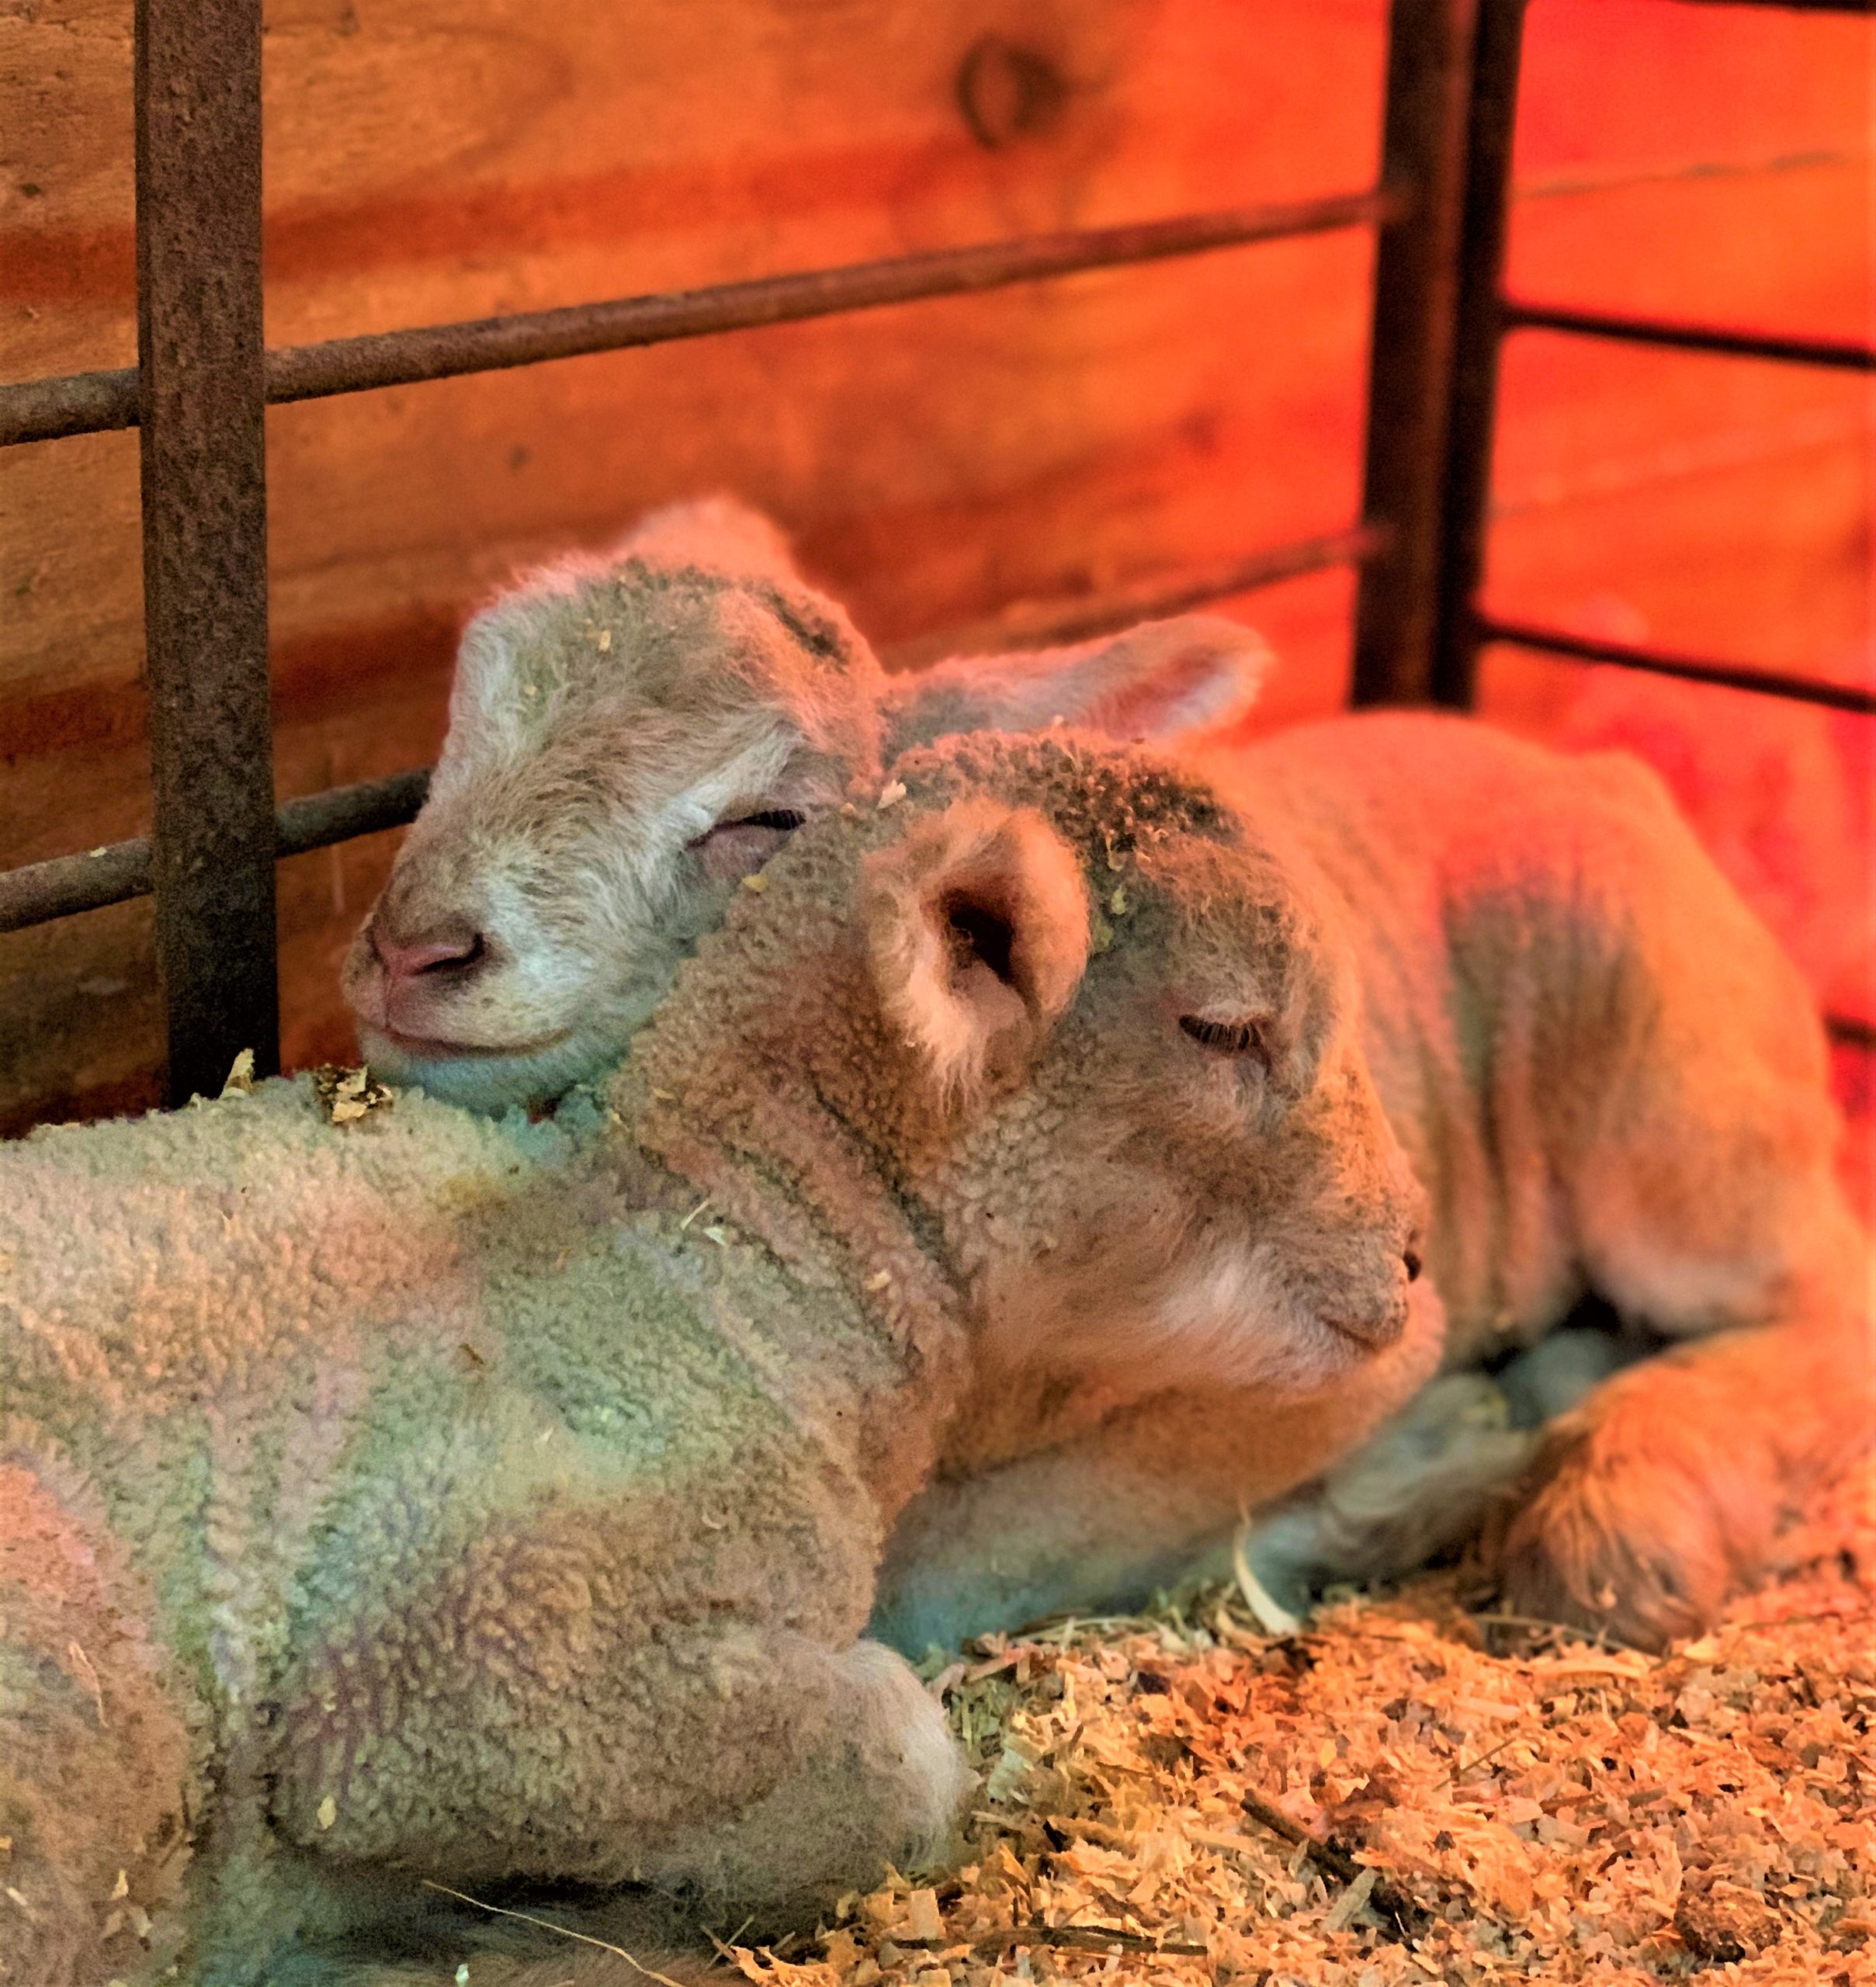 Sleeping lambs